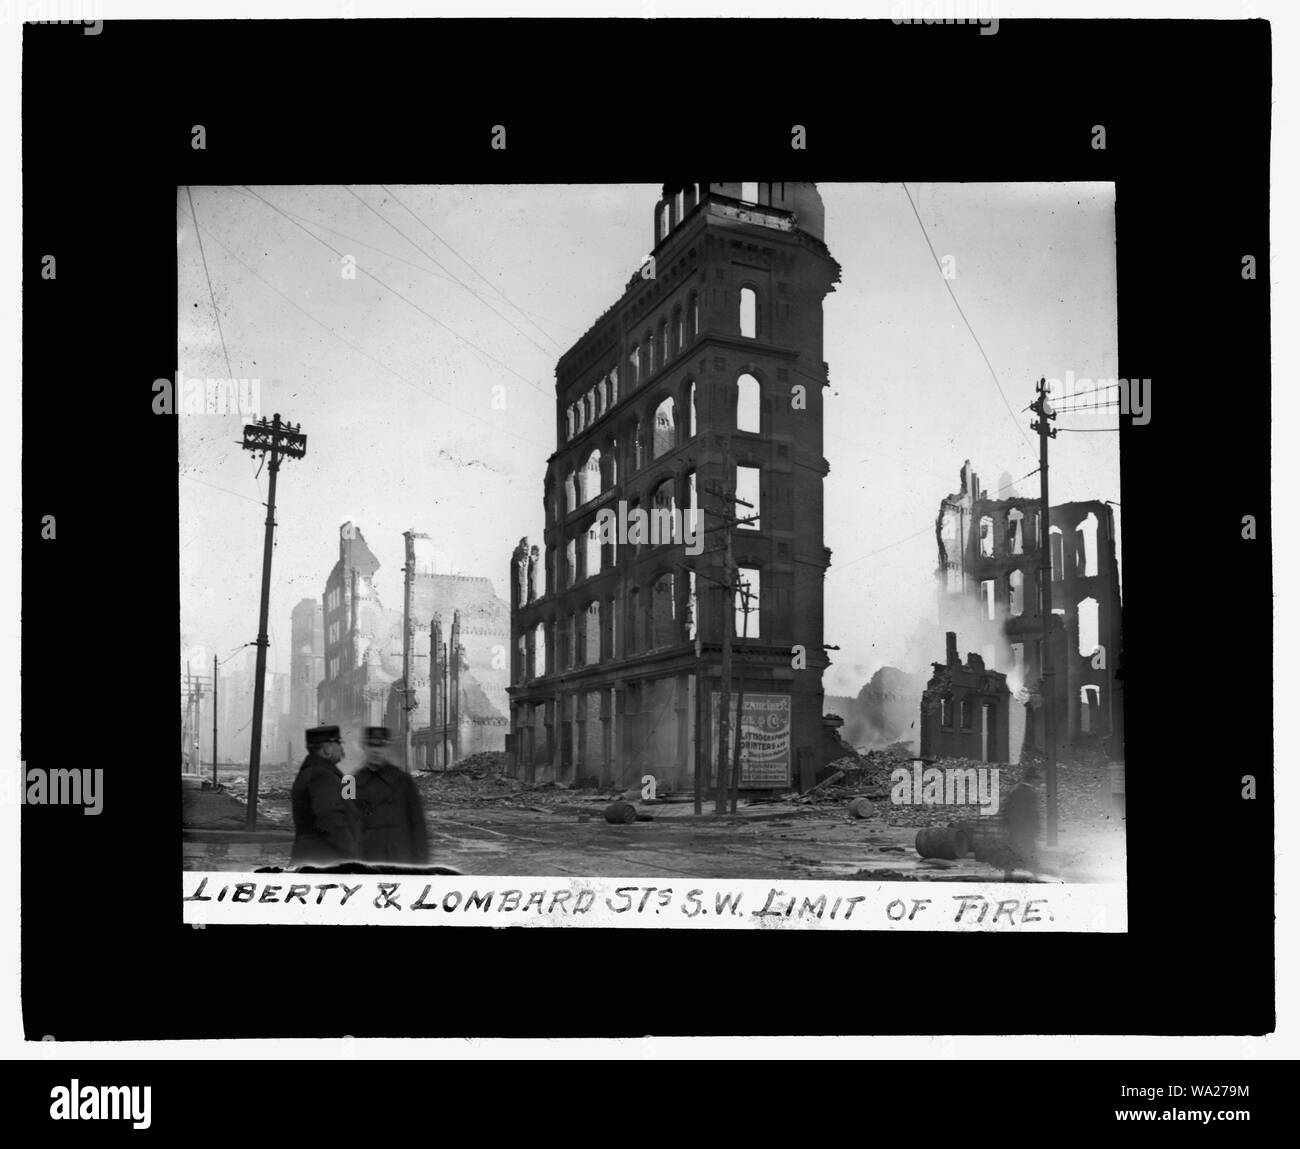 Incendie de Baltimore, 1904] Liberty & Lombard Sts., S.W. limiter d'incendie Banque D'Images